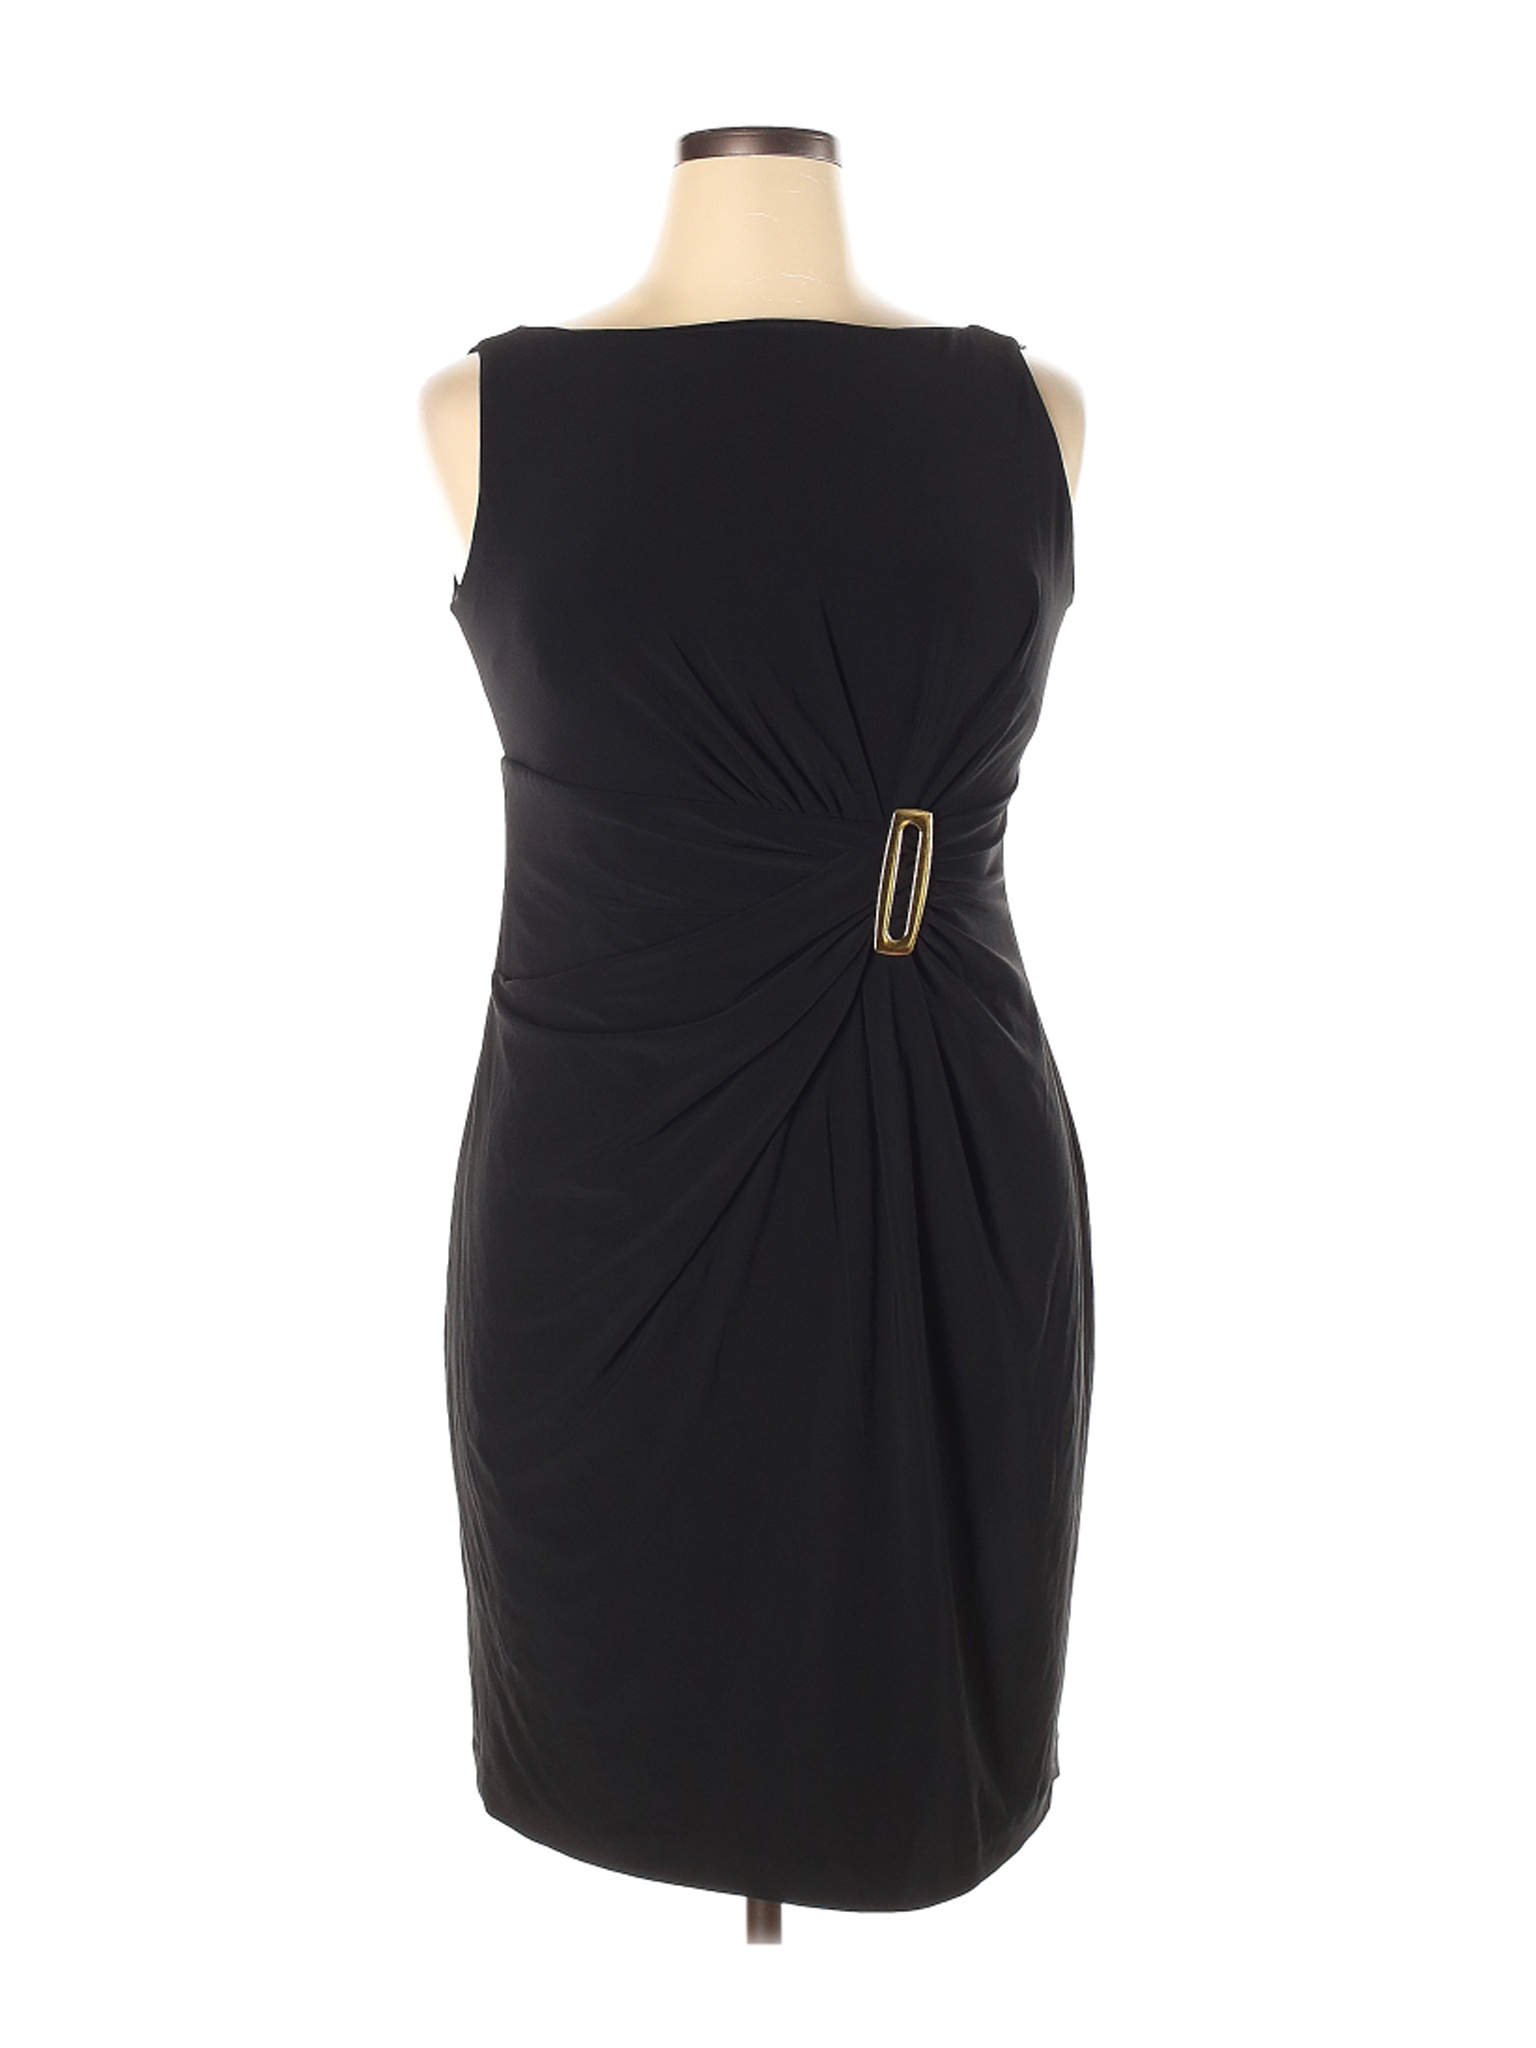 Anne Klein Women Black Cocktail Dress 14 | eBay